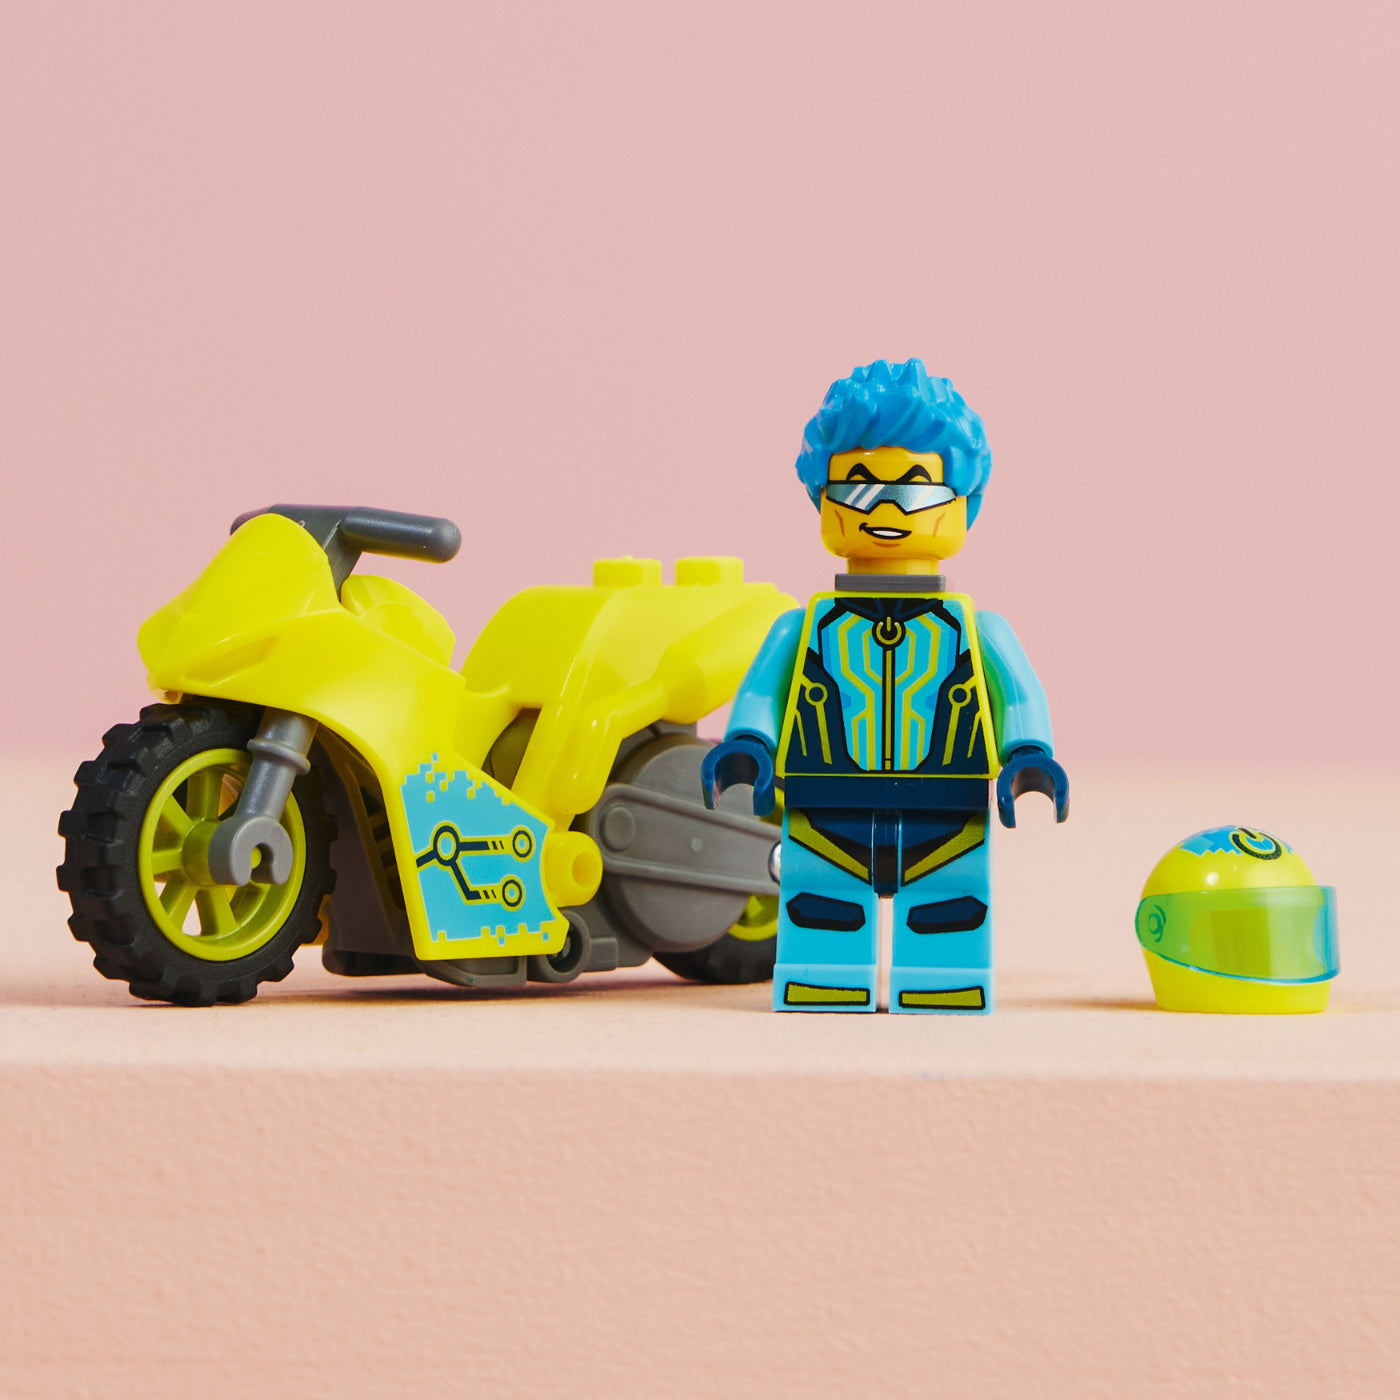 LEGO® City Moto Acrobática: Cibernauta (60358)